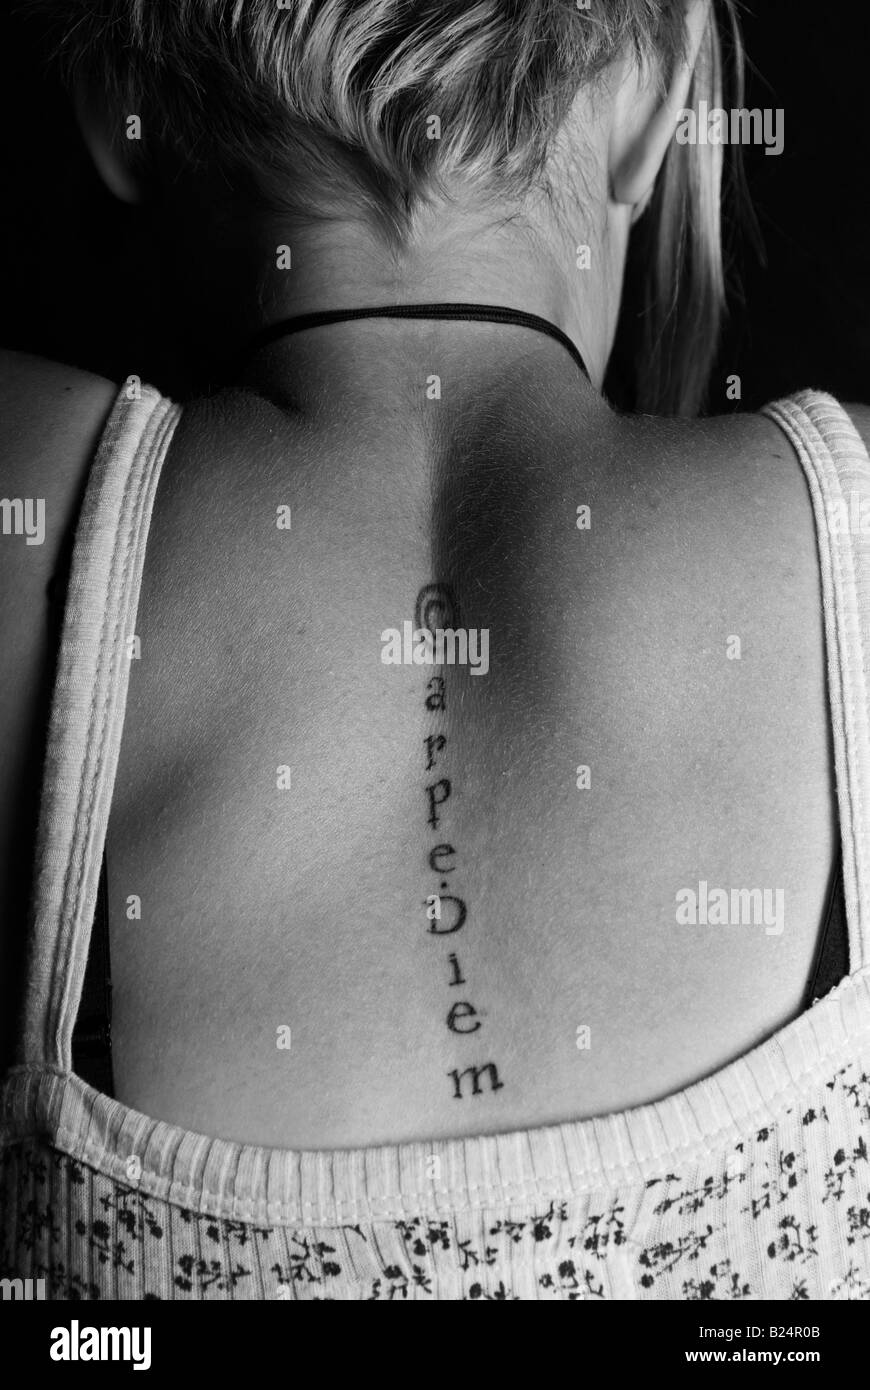 Foto di stock di carpe diem tatuaggio sul retro di un adolescente Foto Stock